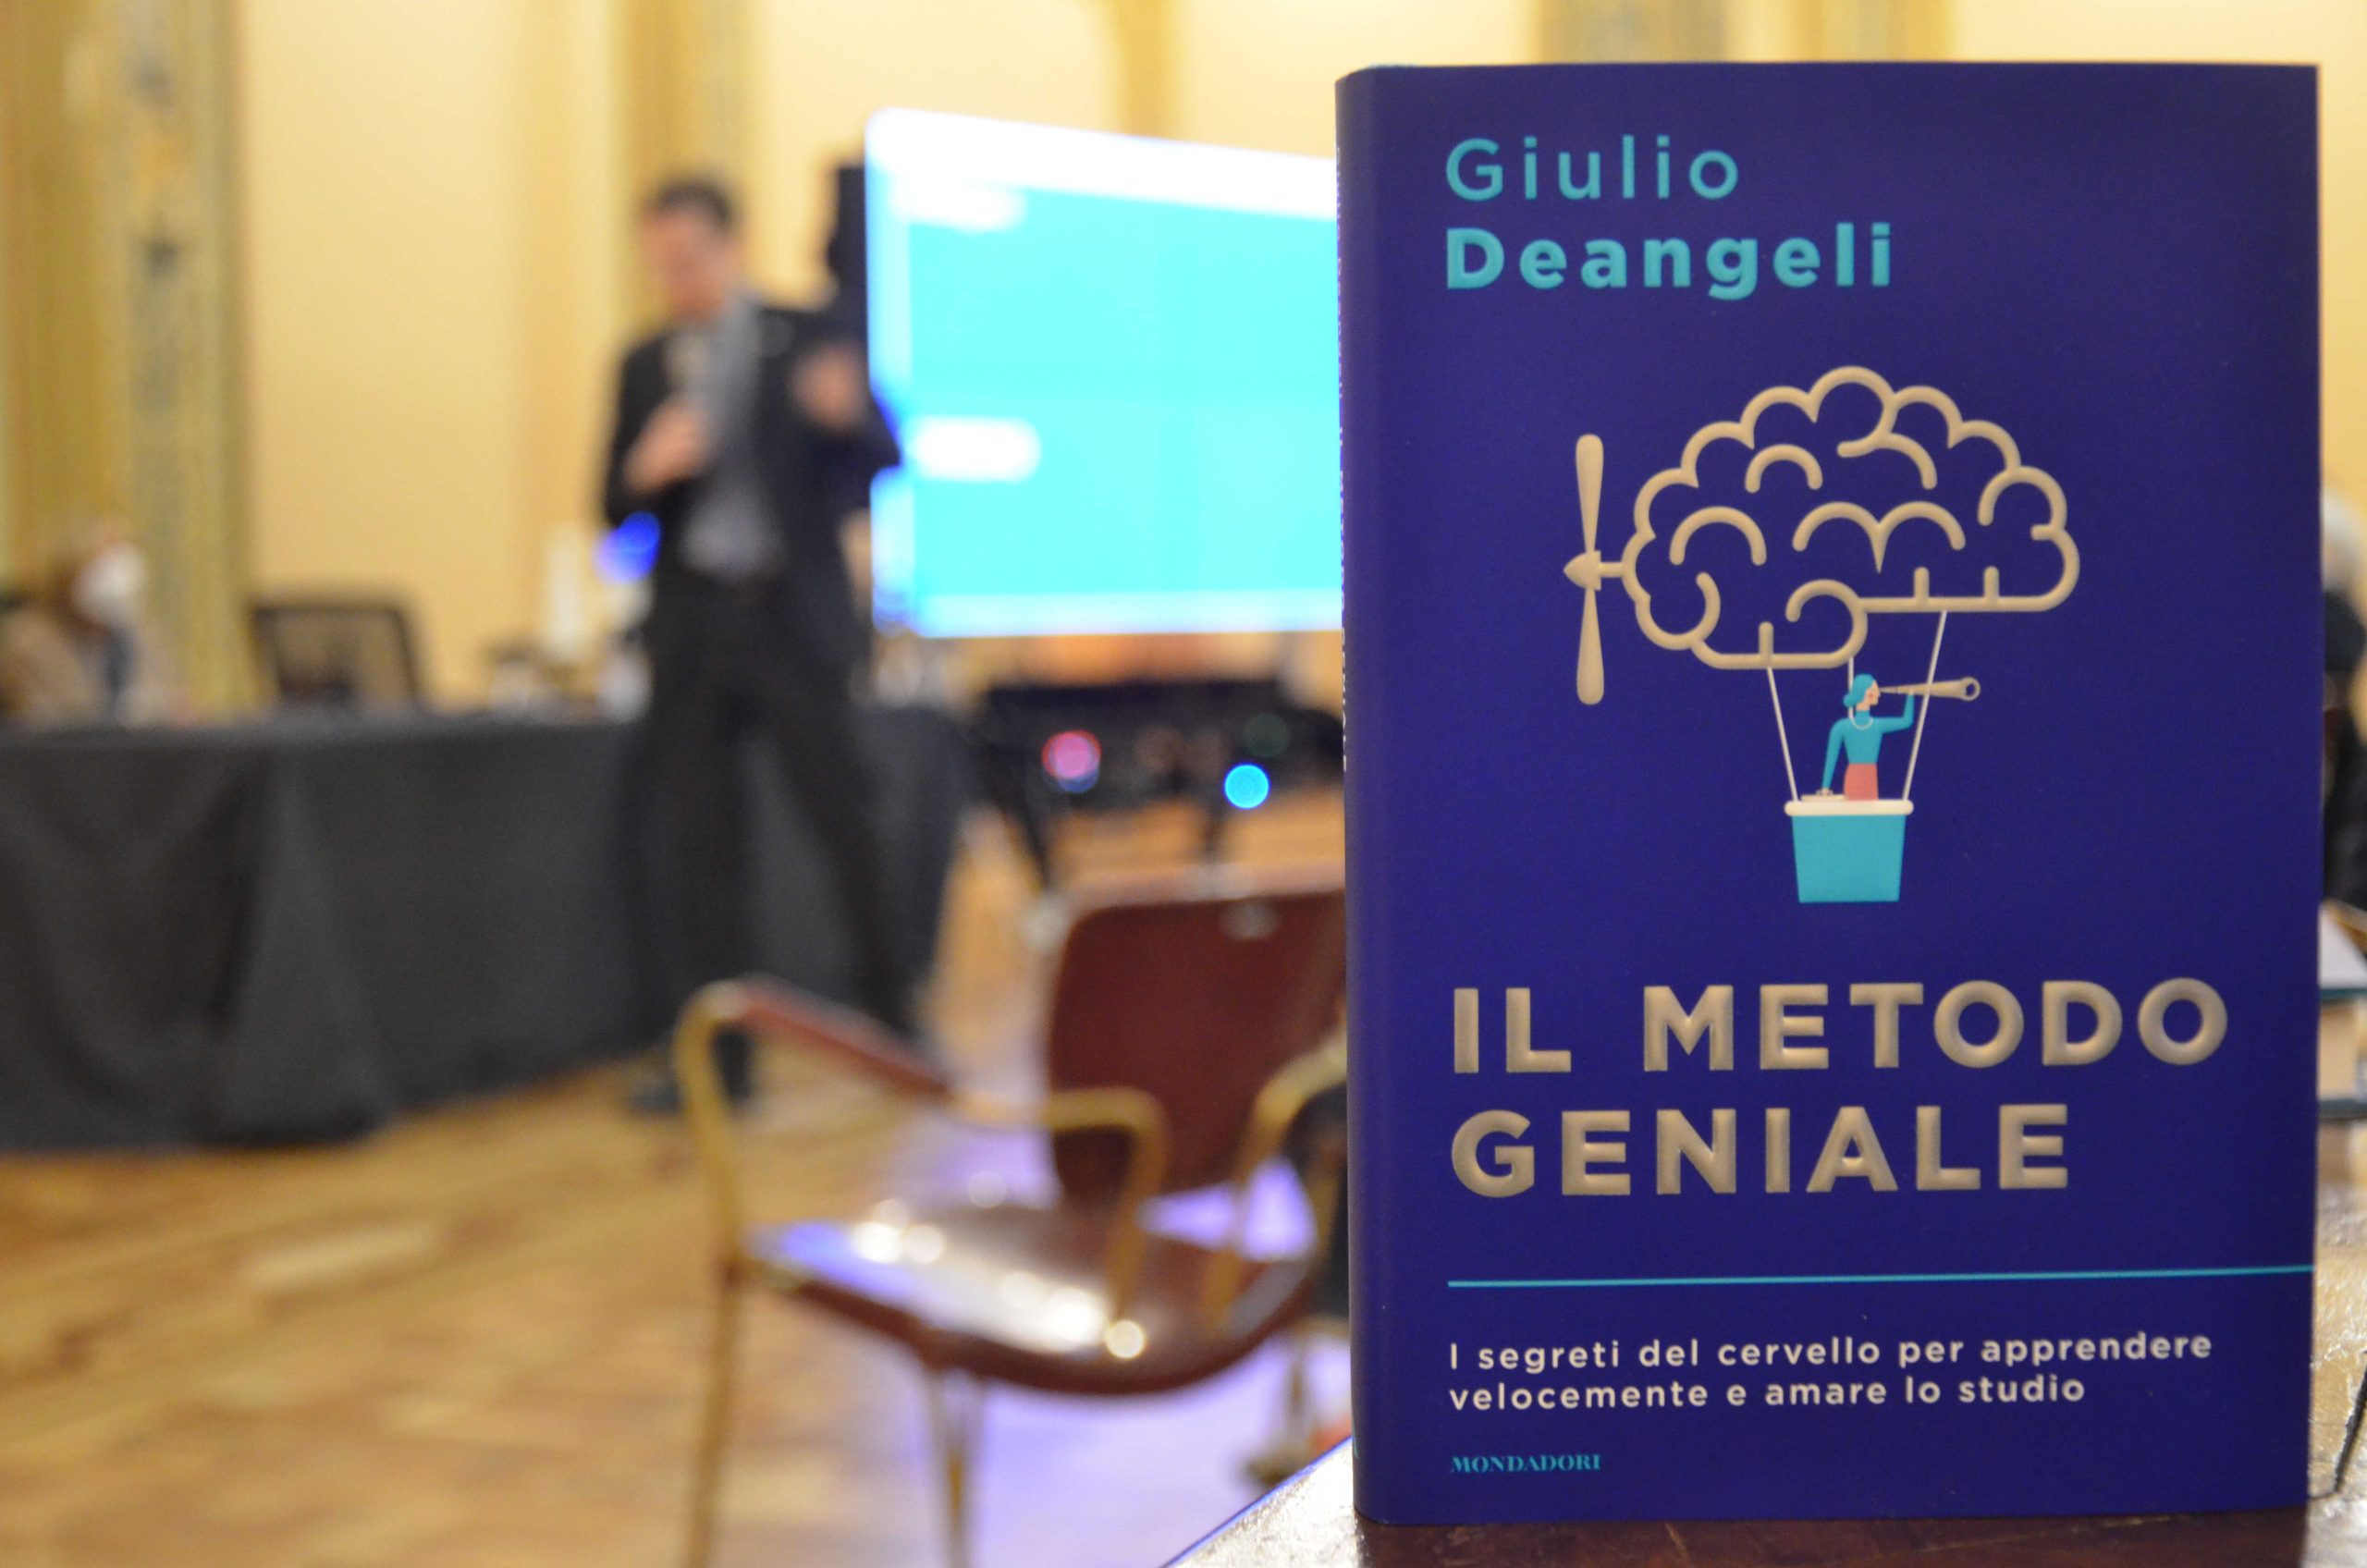 il metodo geniale di Giulio Deangeli - Amici del Festival della Scienza